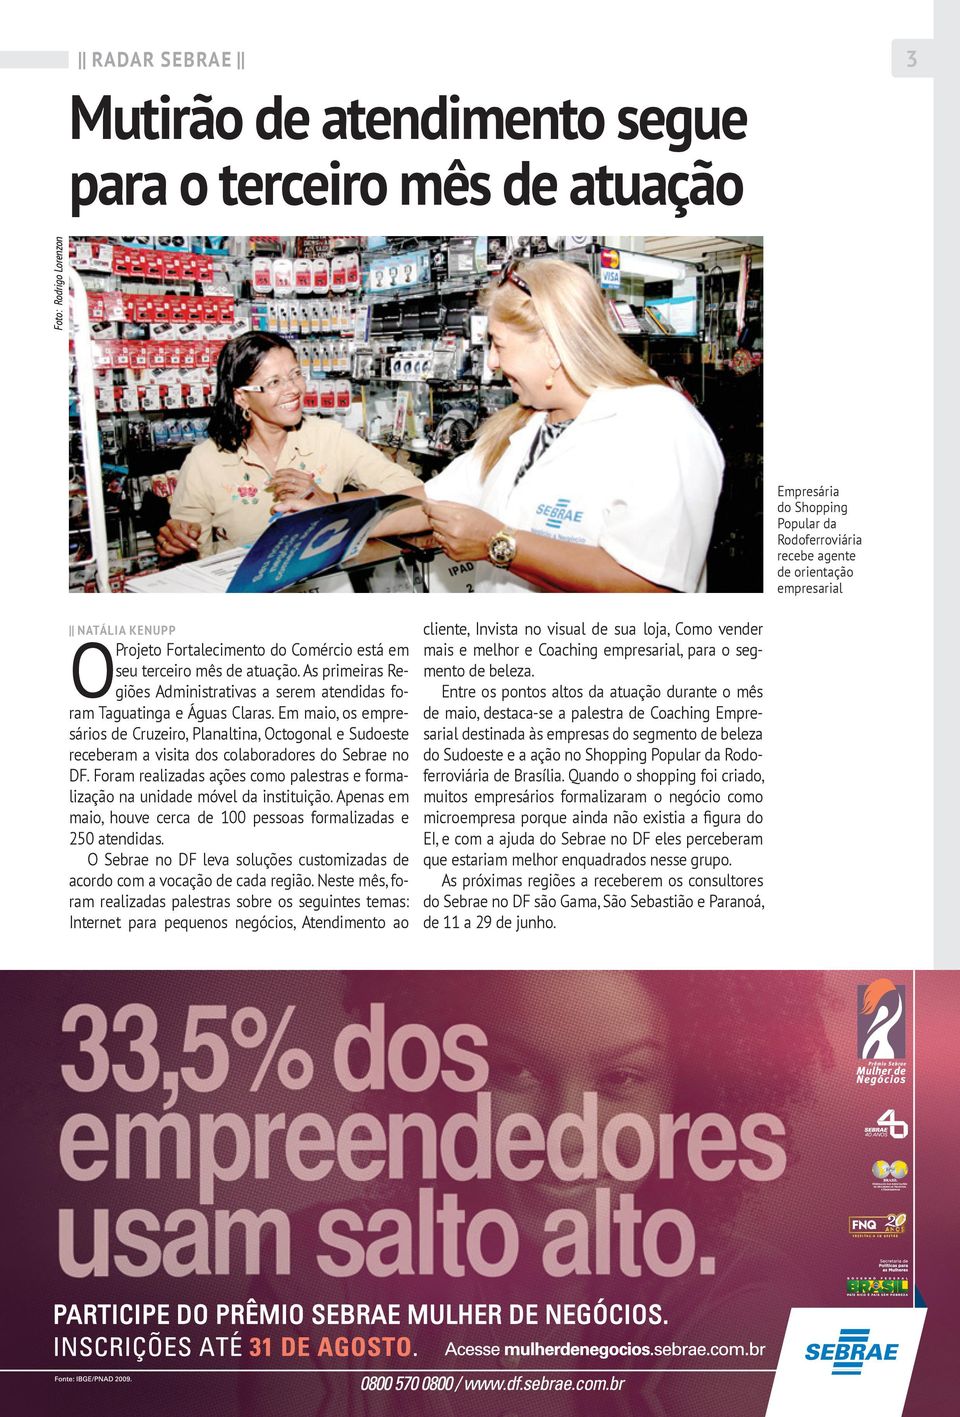 Em maio, os empresários de Cruzeiro, Planaltina, Octogonal e Sudoeste receberam a visita dos colaboradores do Sebrae no DF.